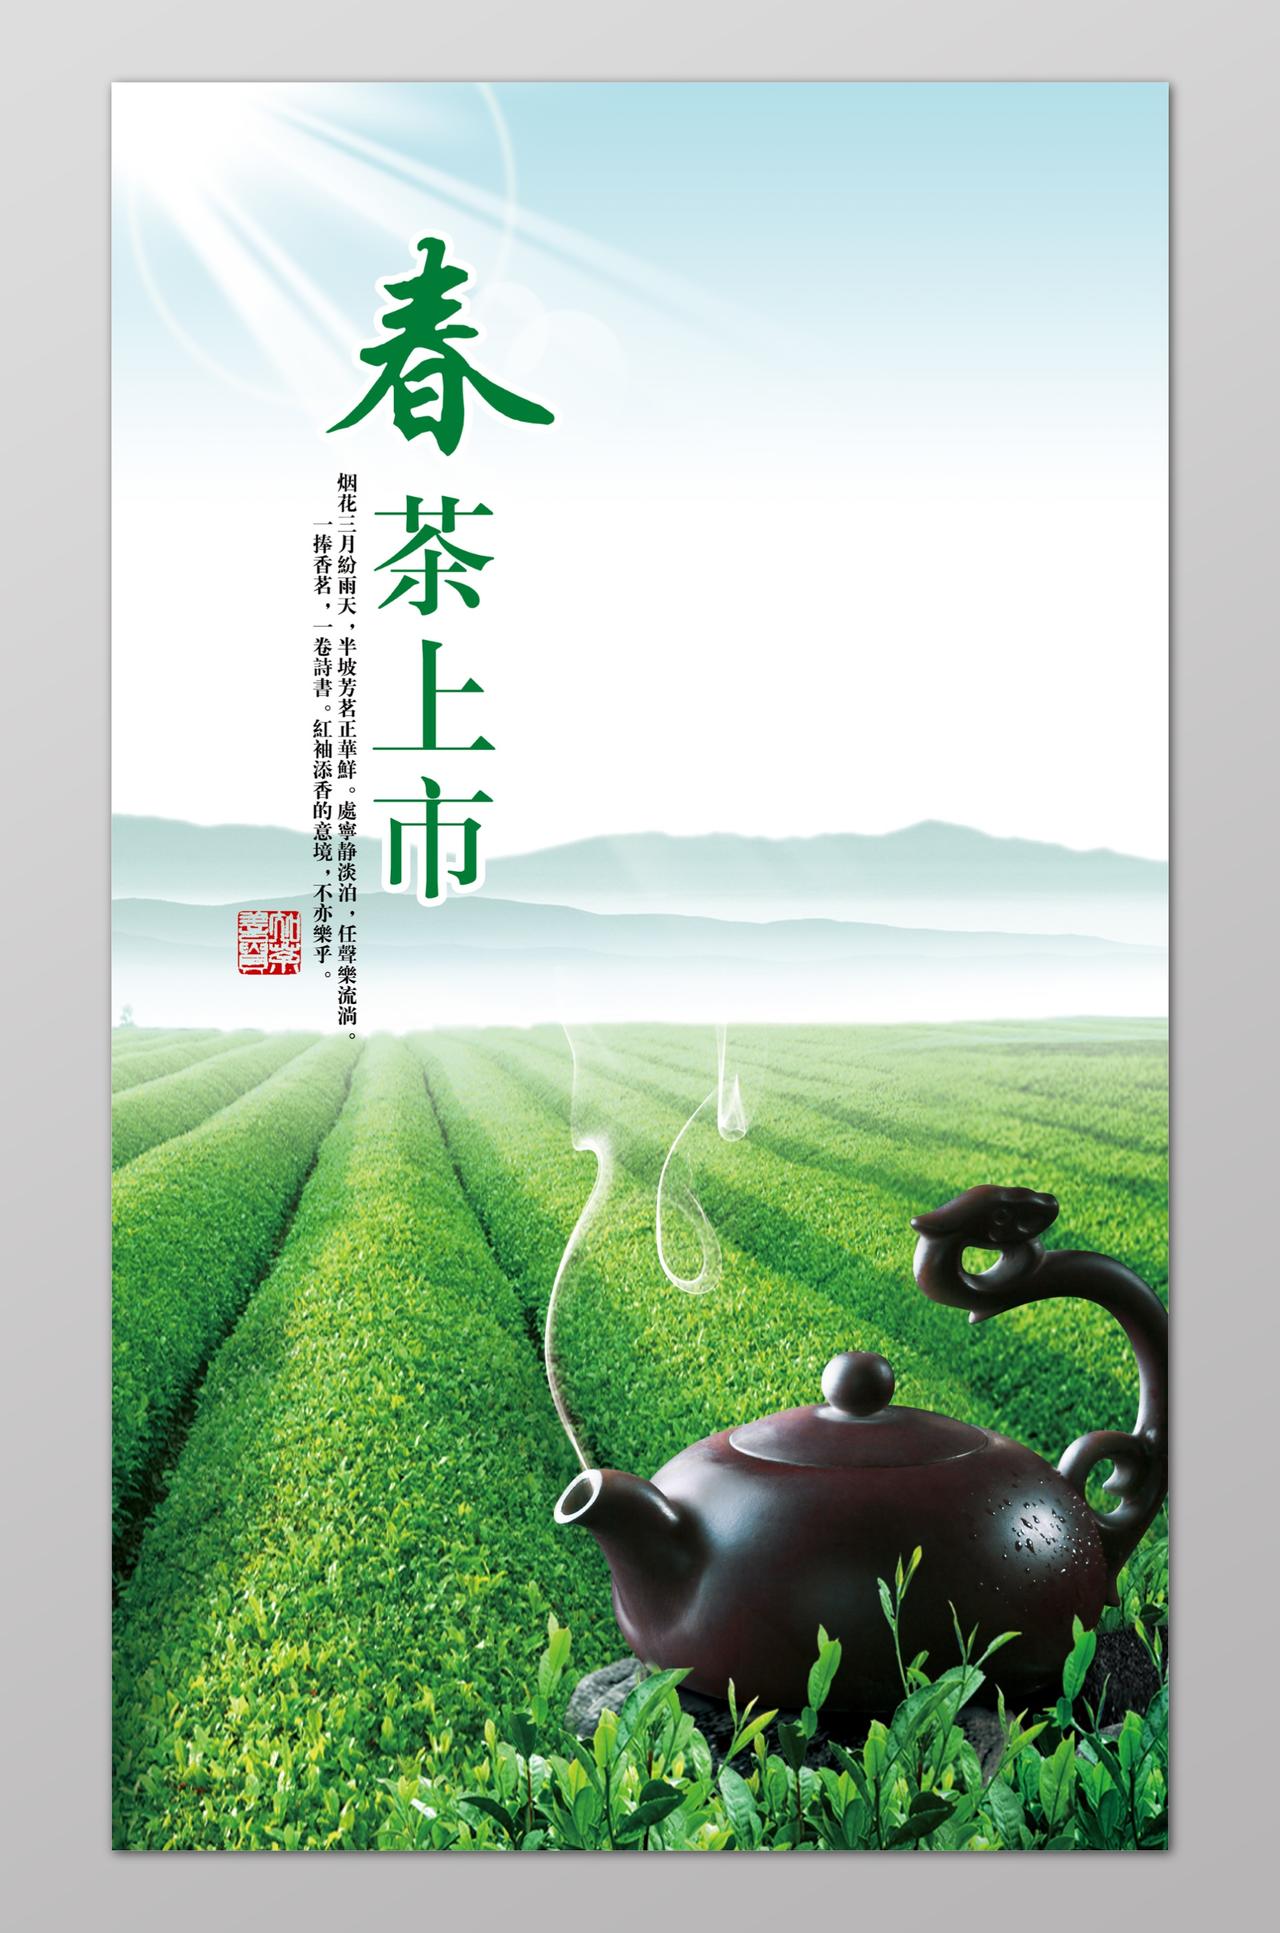 
春茶上市宣传海报